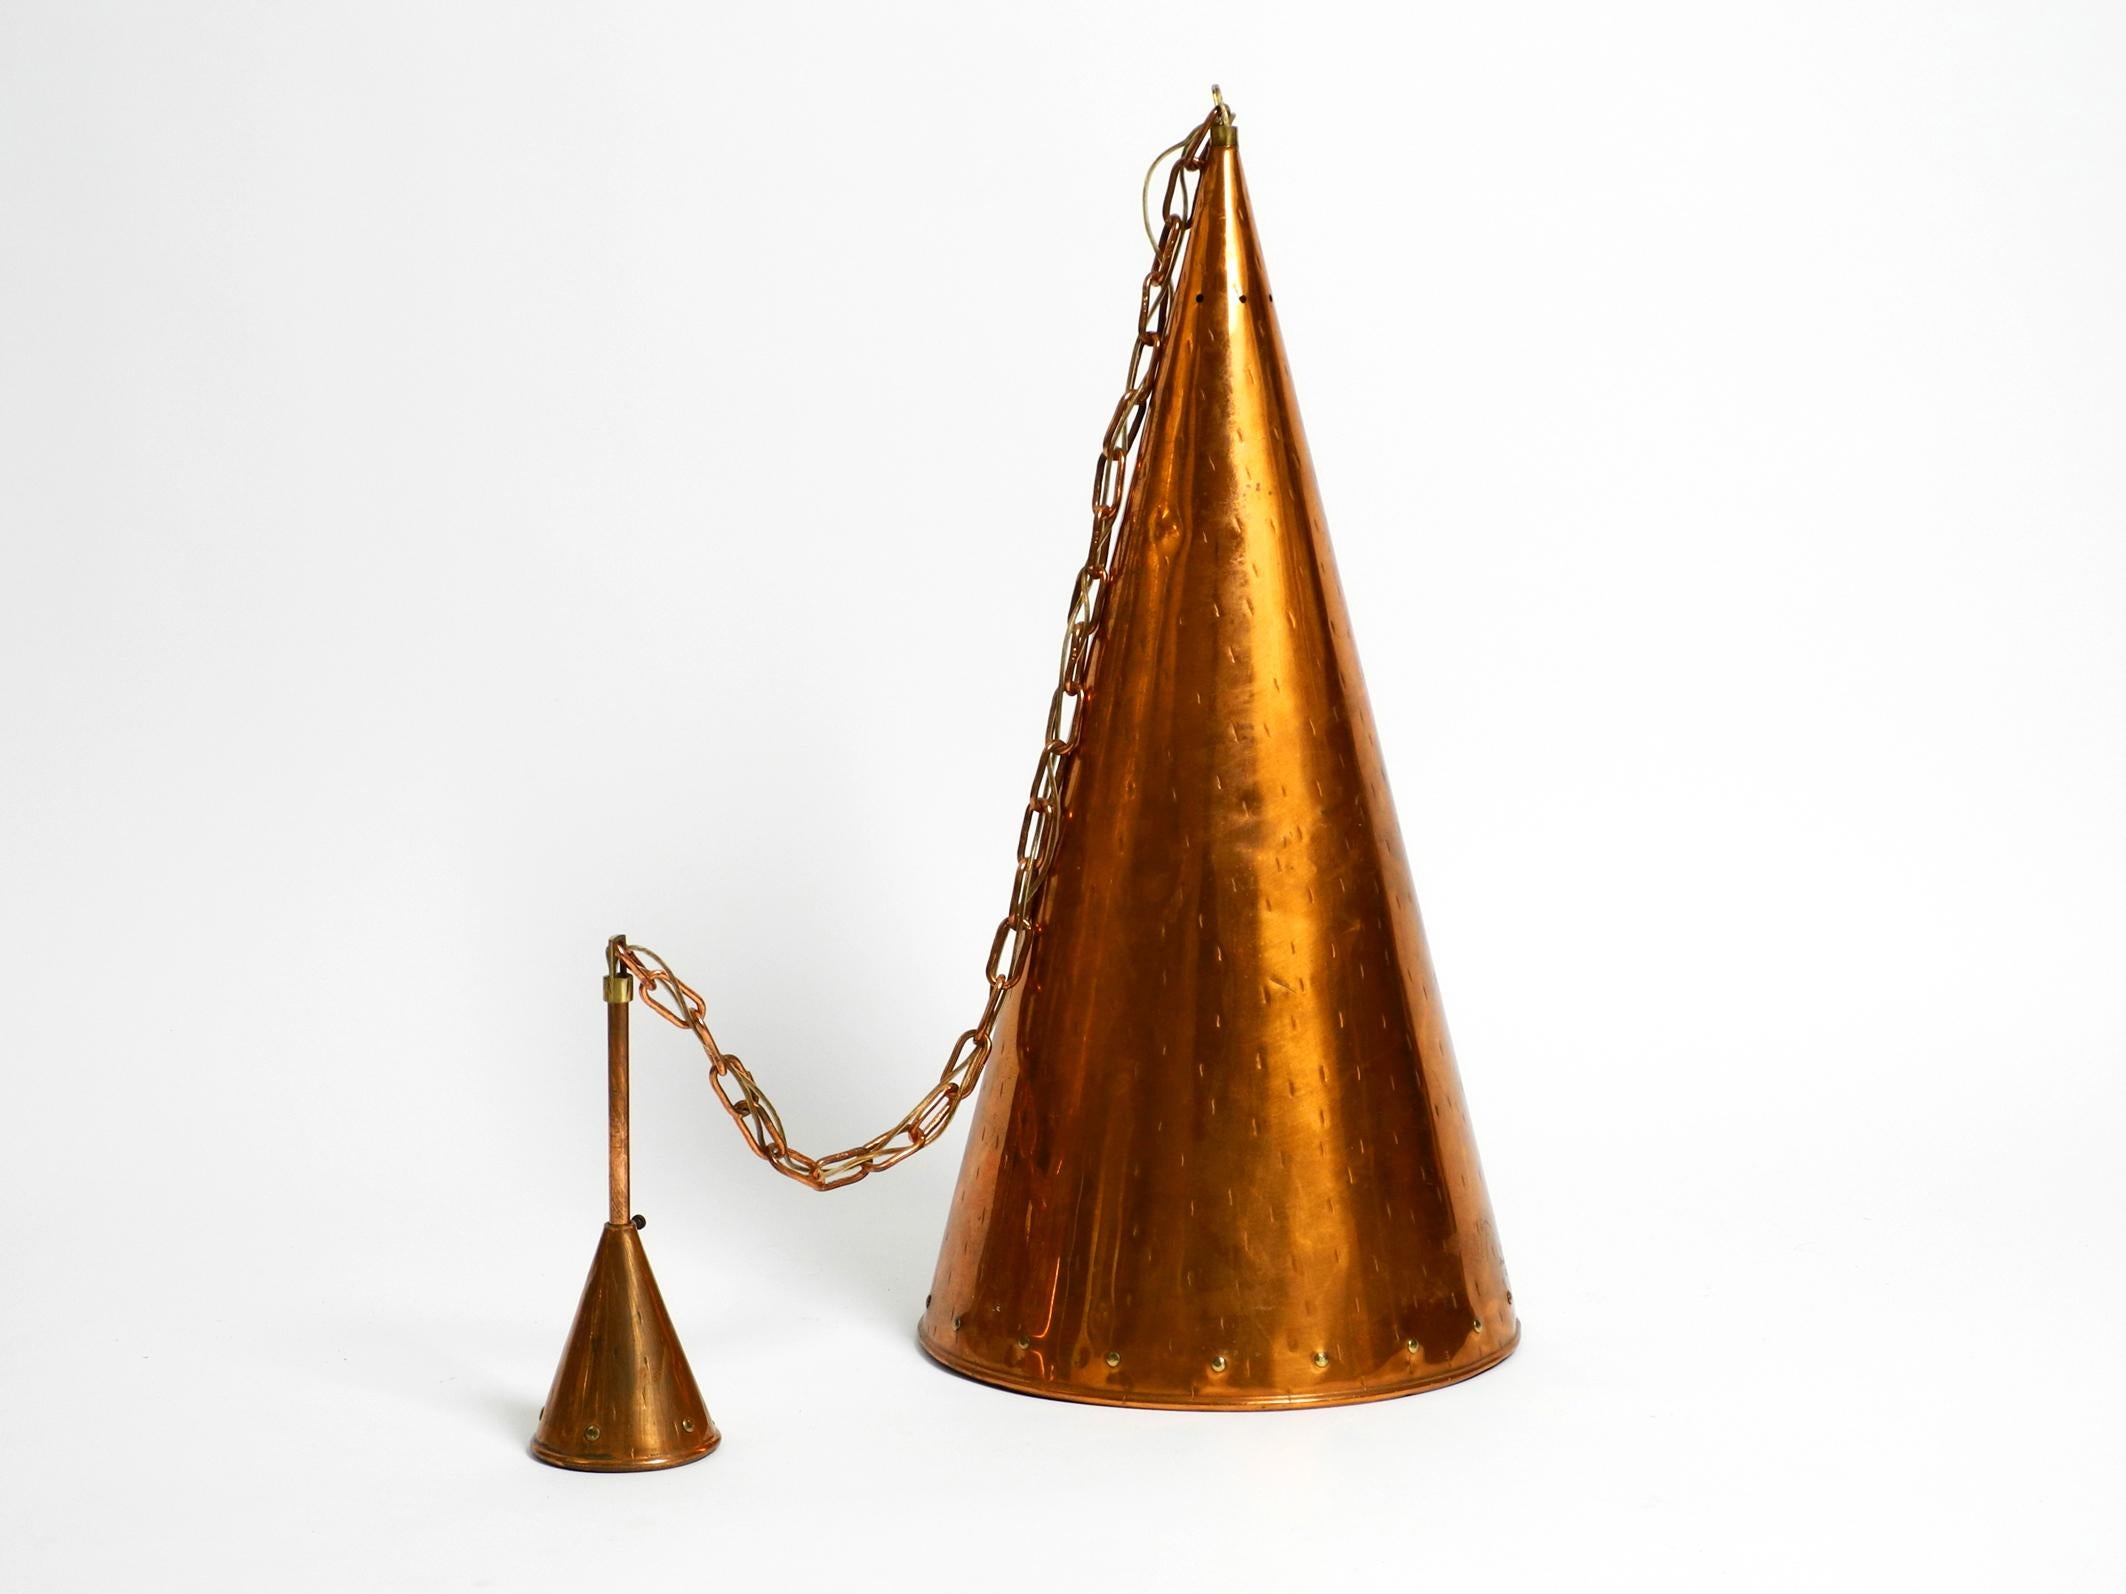 Space Age 1960's Copper Cone Pendant Lamp from Th. Valentine Copenhagen Made in Denmark